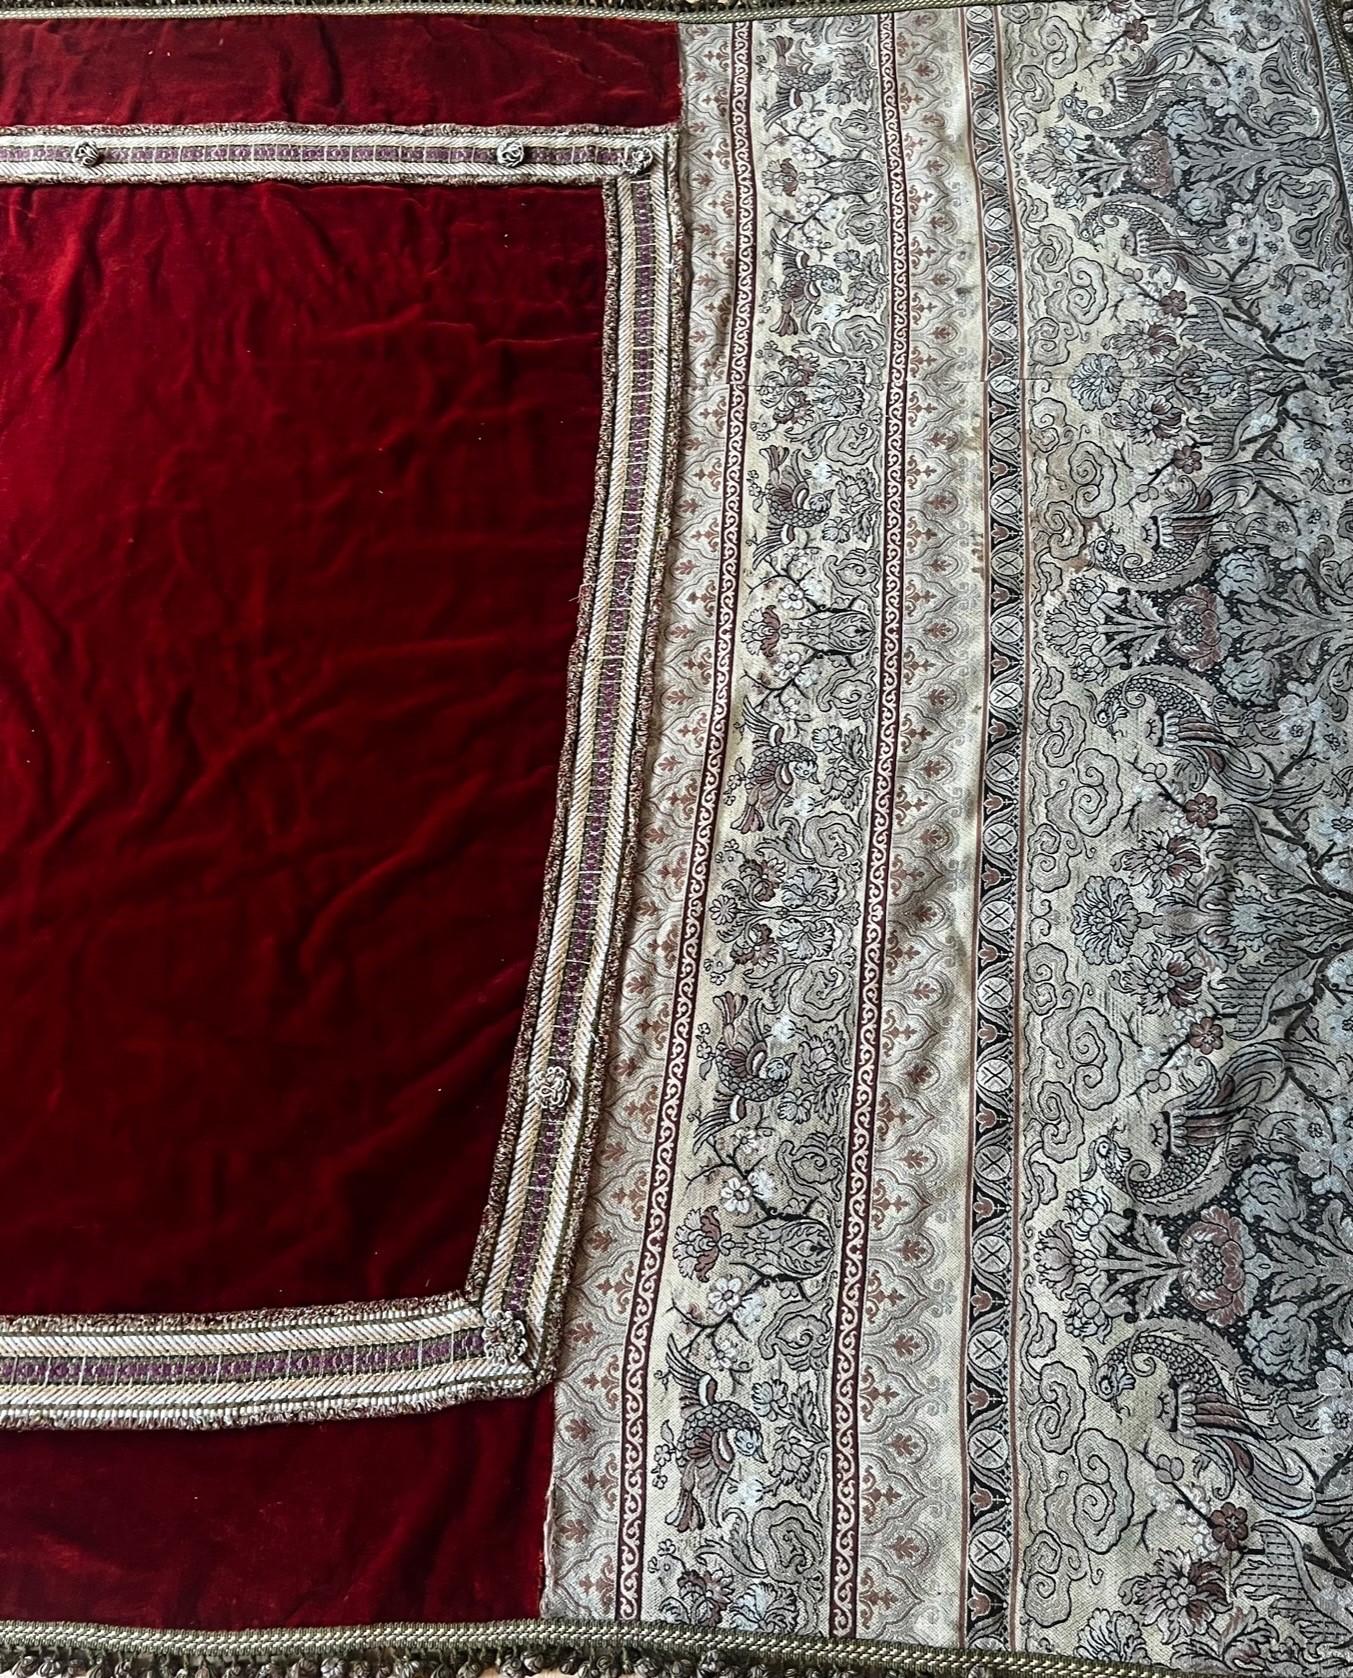 Dies ist ein wirklich exquisiter antiker Seidensamt-Wandbehang mit handgewebtem floralem Pfauenmuster und Metallfäden als Patchwork. Die Geschichte des Samtes geht auf das 13. Jahrhundert zurück und bezieht sich auf Gegenstände aus dem Besitz von